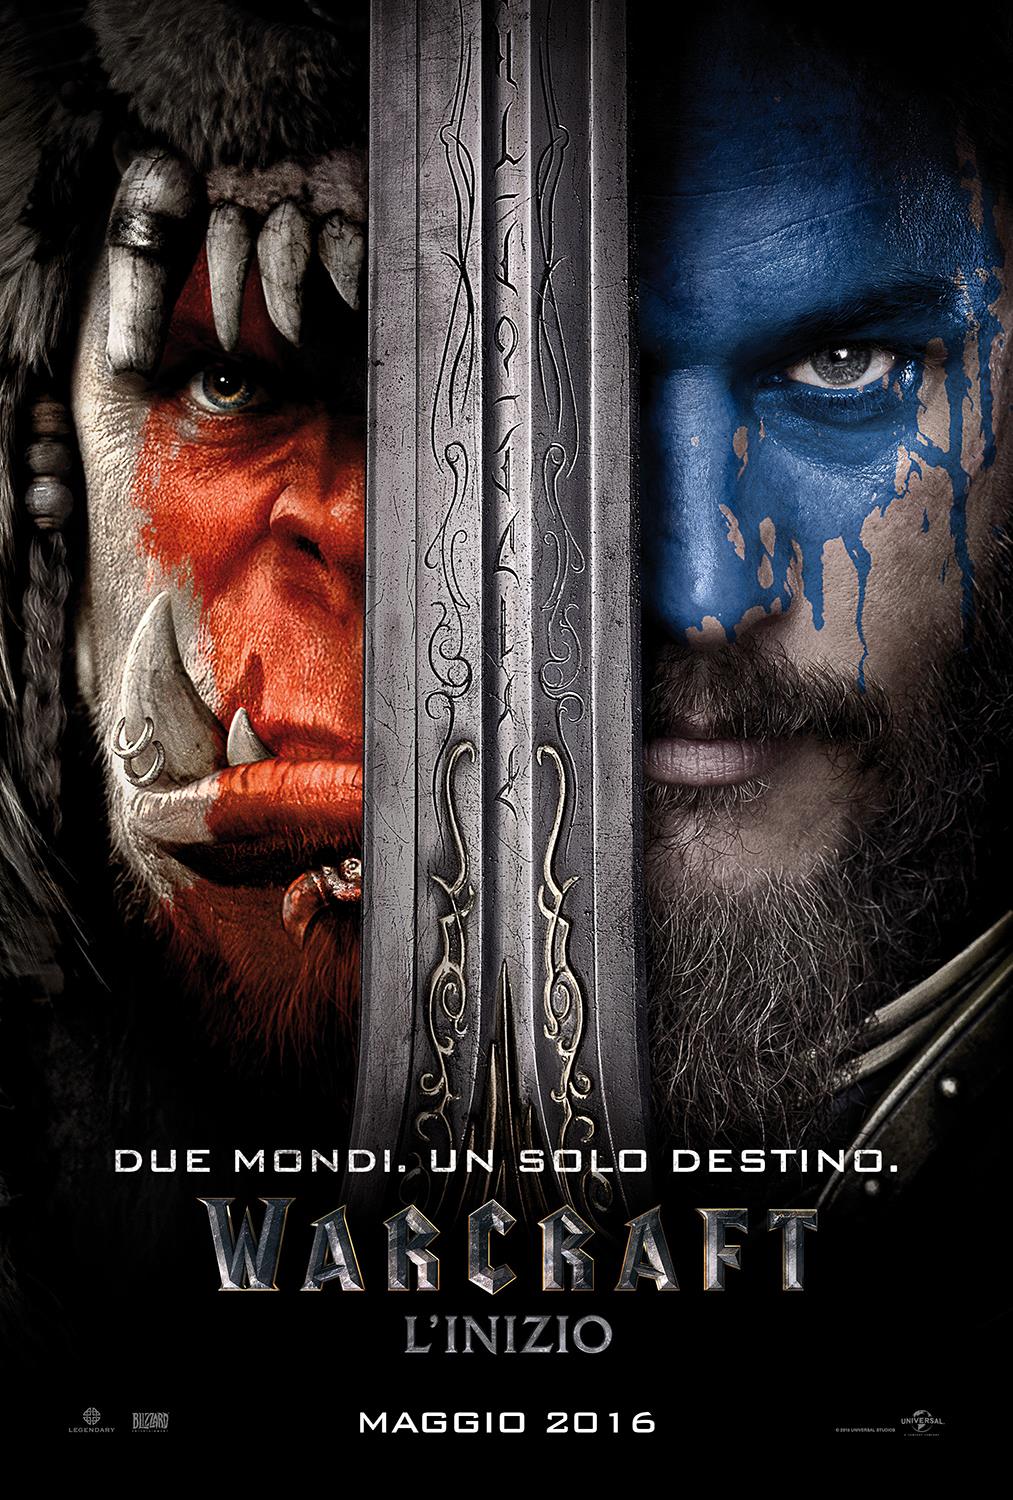 Trailer di Warcraft:L’Inizio confermato per il Blizzcon!